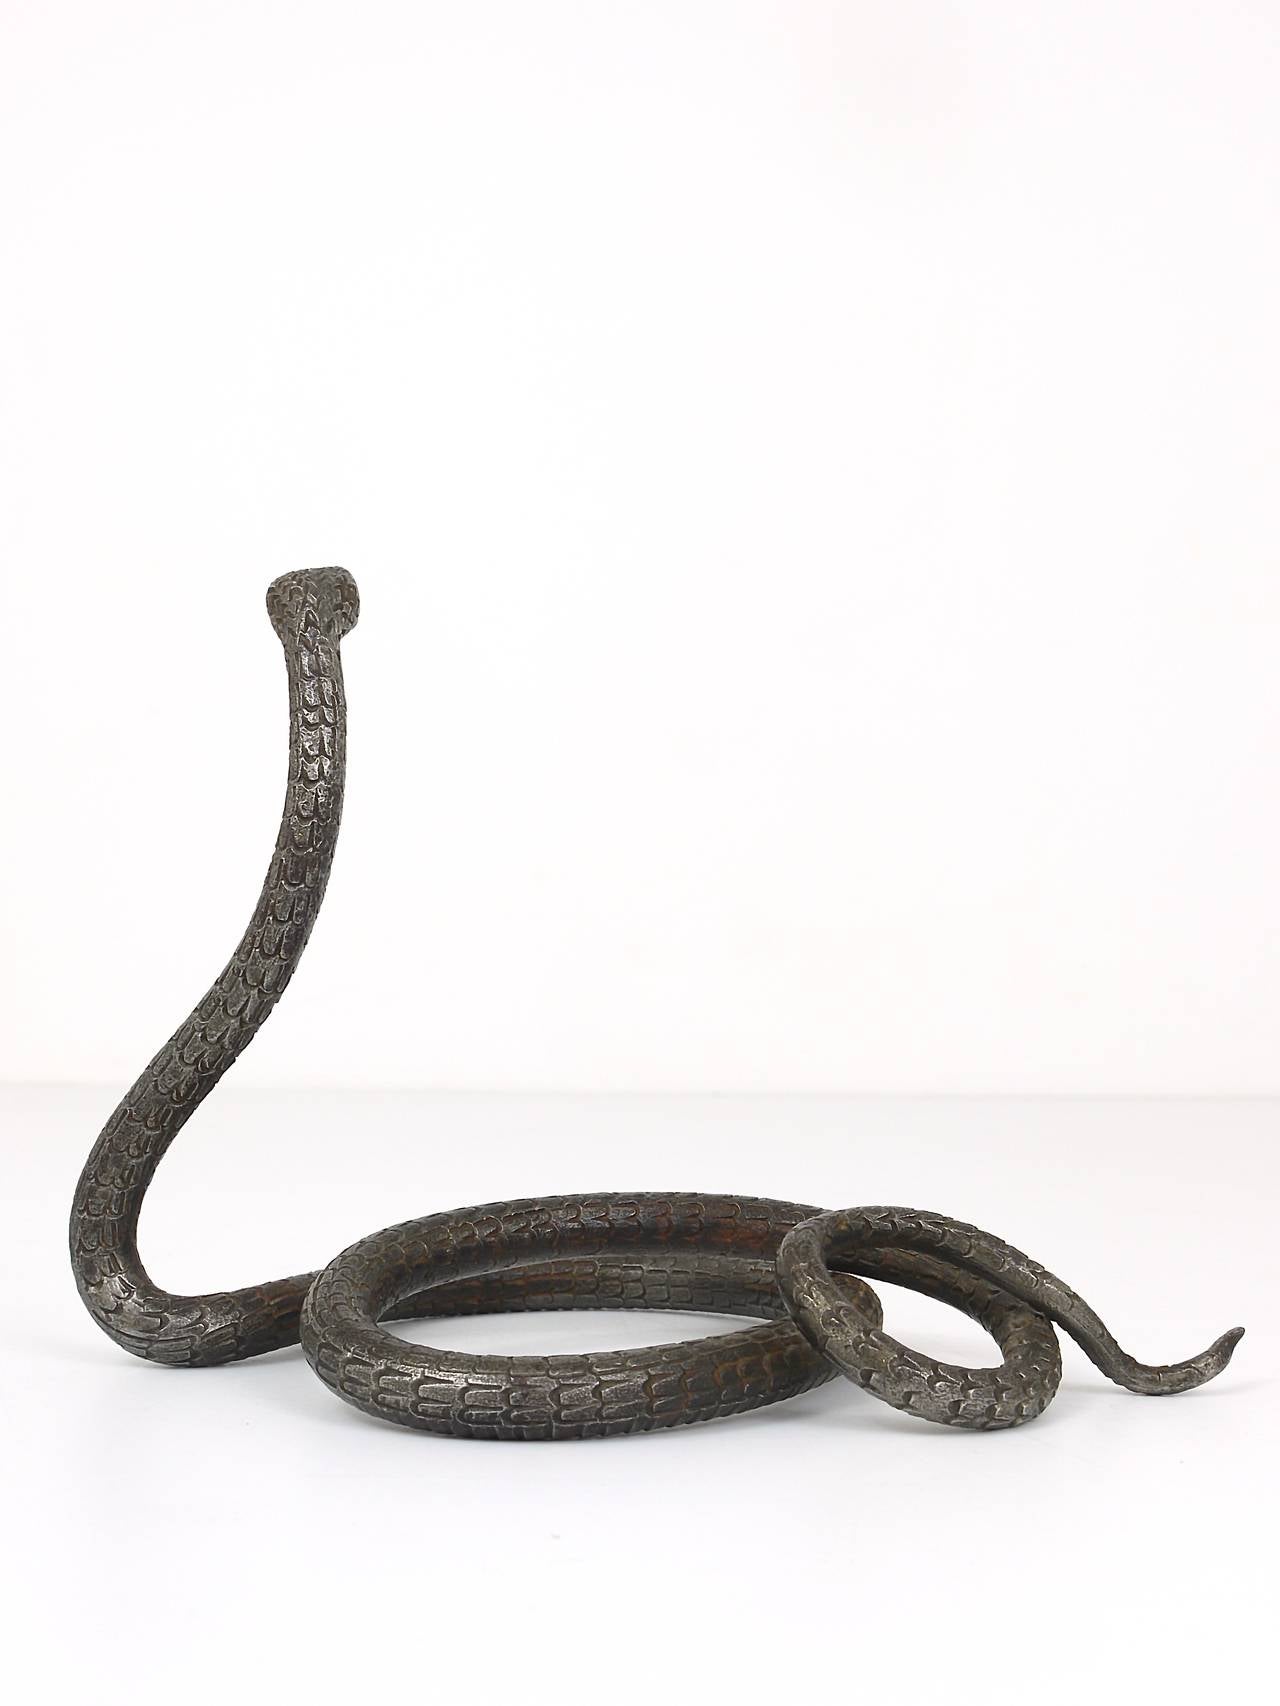 Folk Art A Hand-Forged Iron Model Of A Snake, Snake Sculpture, Vienna, 1920s